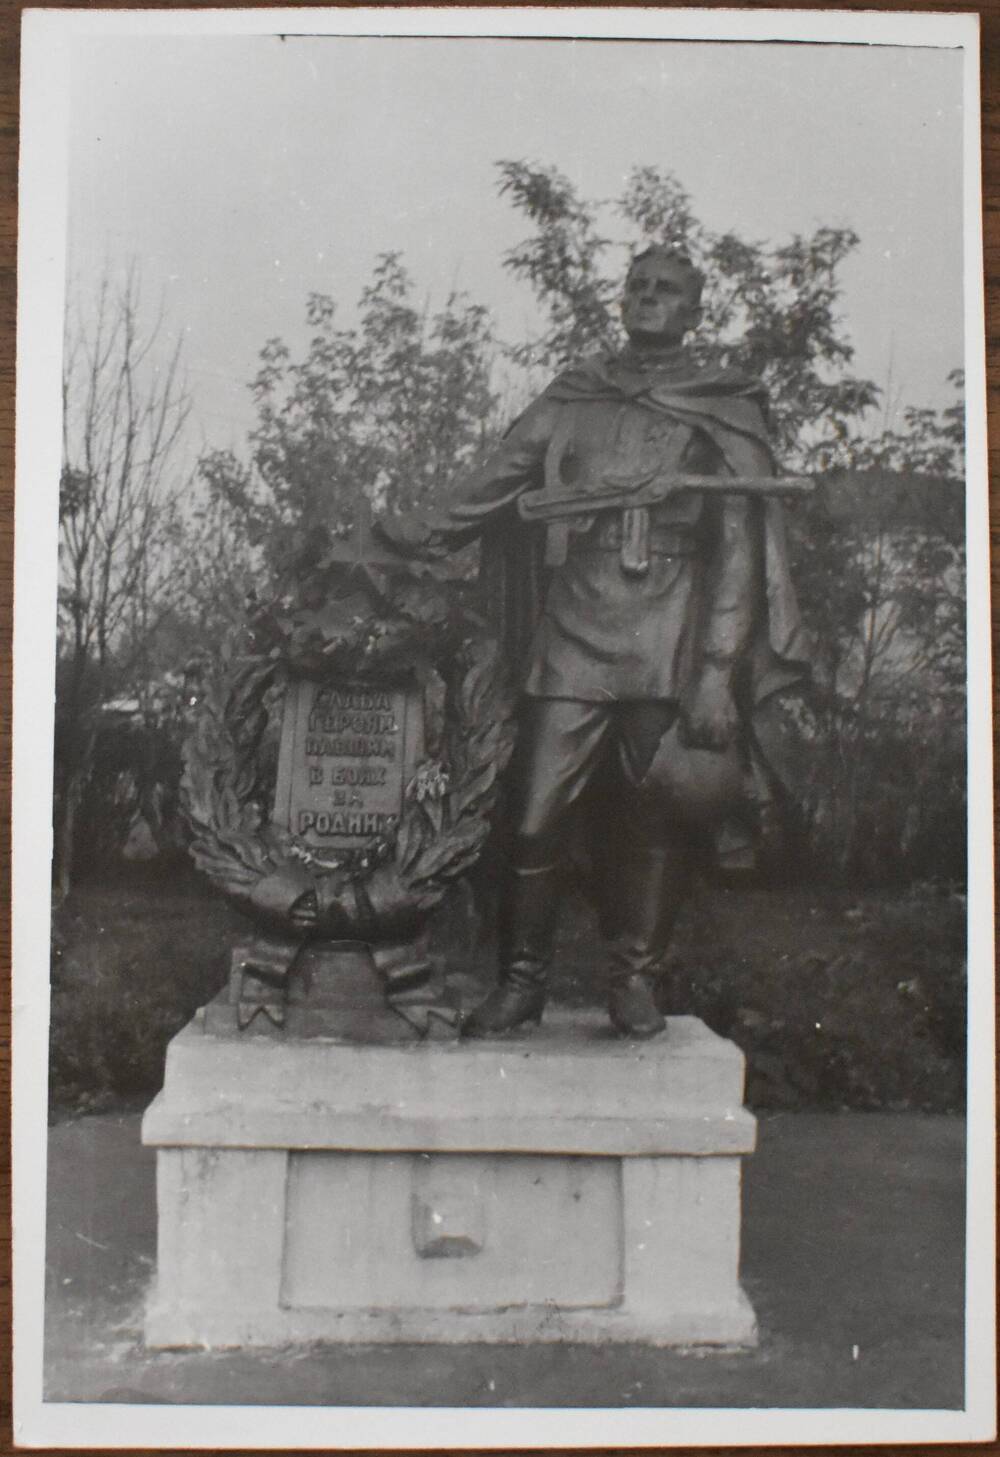 Фотография.
Памятник погибшим воинам в годы
Великой Отечественной войны
г. Балашов.